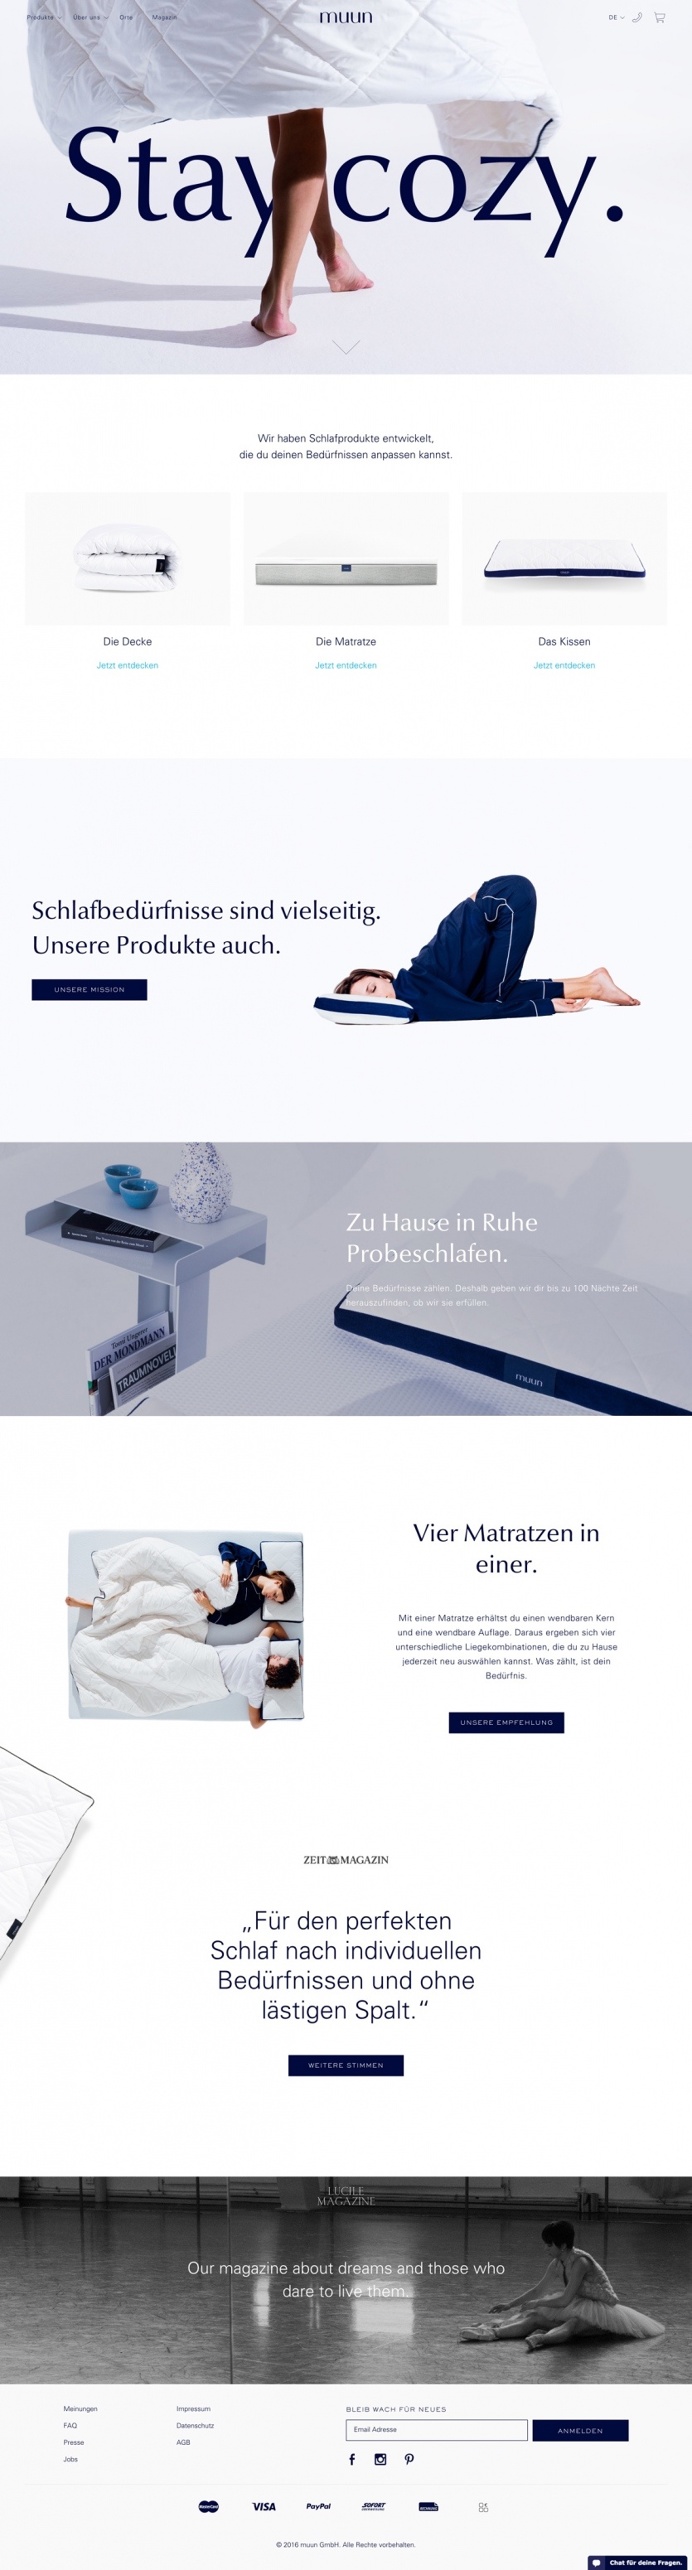 German softness matratze mattress matress soft cozy muun beautiful website webdesign inspiration designblog modern trend 2016 bed sleep slee